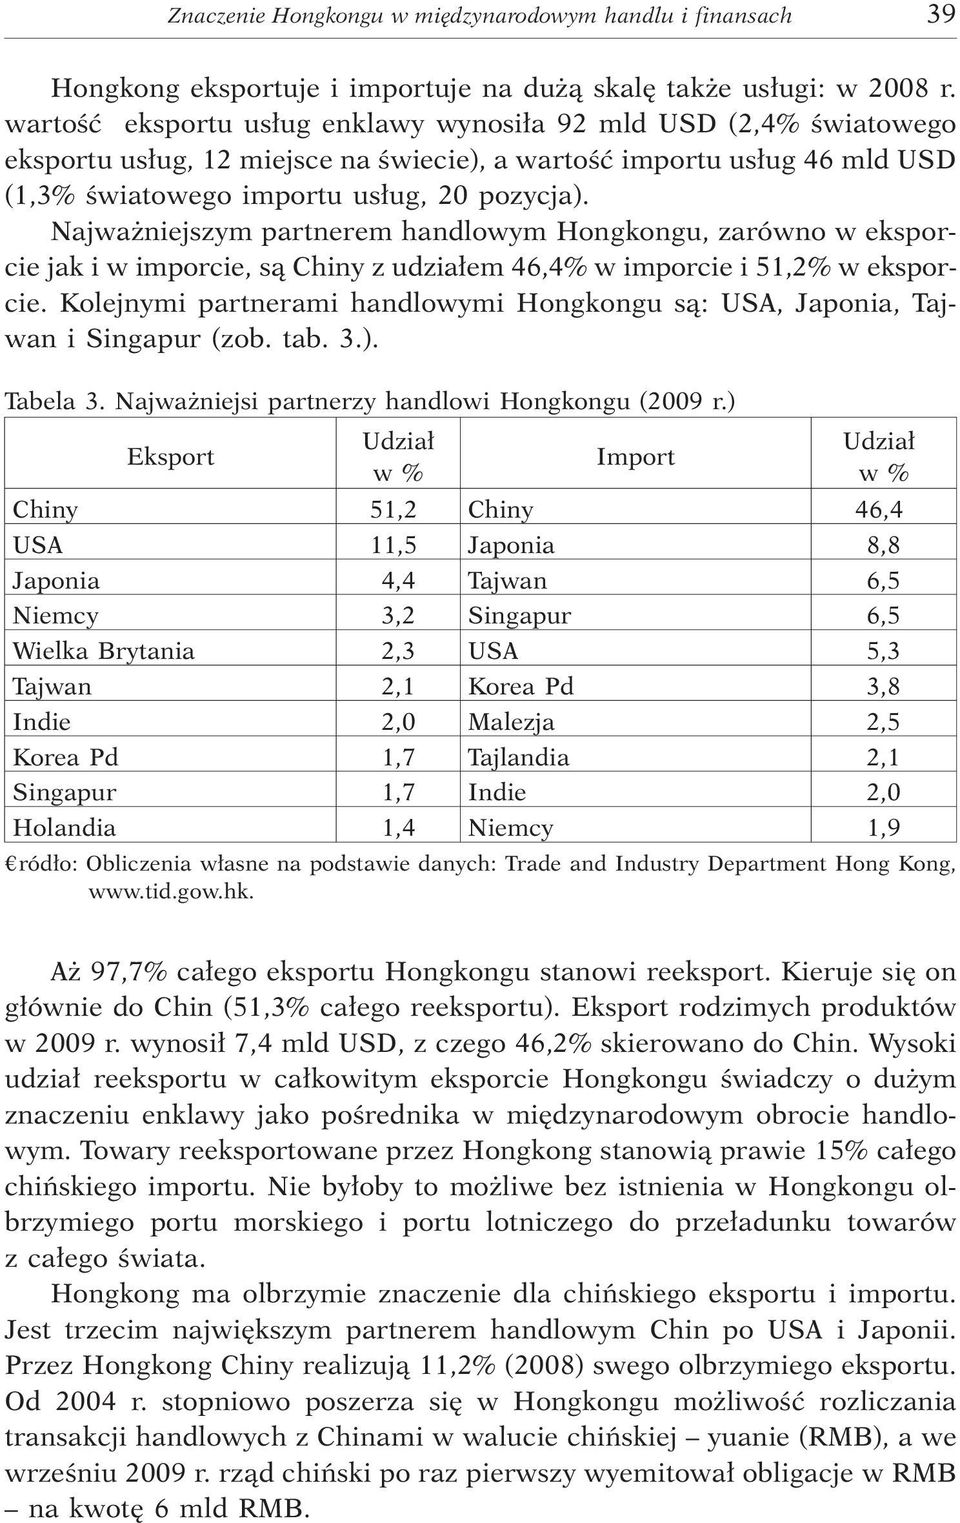 Najwa niejszym partnerem handlowym Hongkongu, zarówno w eksporcie jak i w imporcie, s¹ Chiny z udzia³em 46,4% w imporcie i 51,2% w eksporcie.